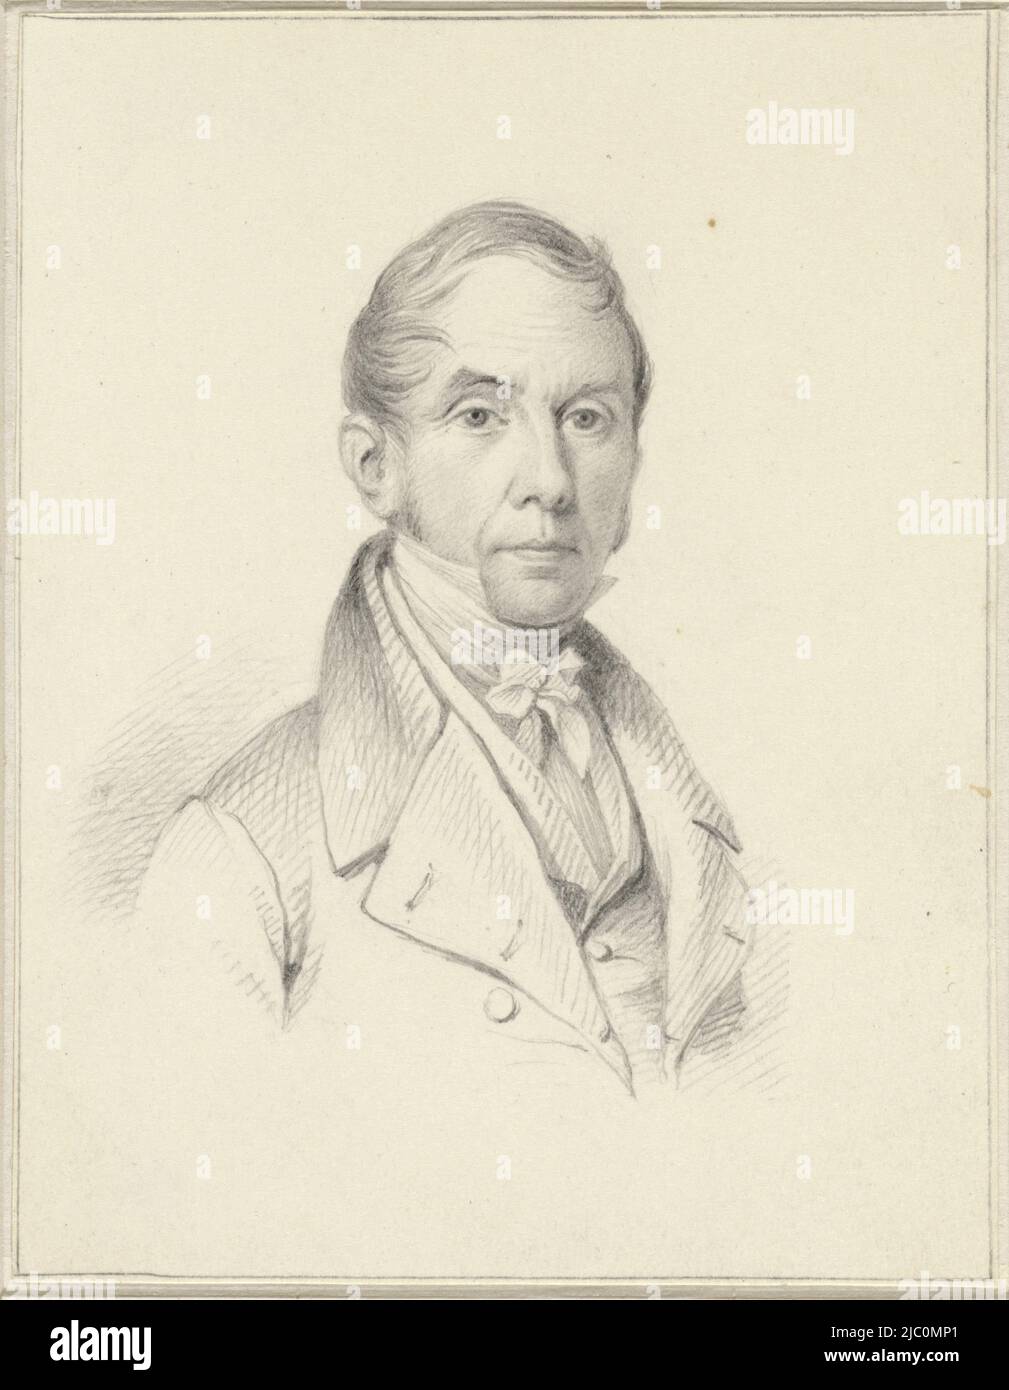 Selbstporträt von Johannes Hari I, Zeichner: Johannes Hari (I), 1800 - 1849, Papier, H 110 mm × B 85 mm Stockfoto